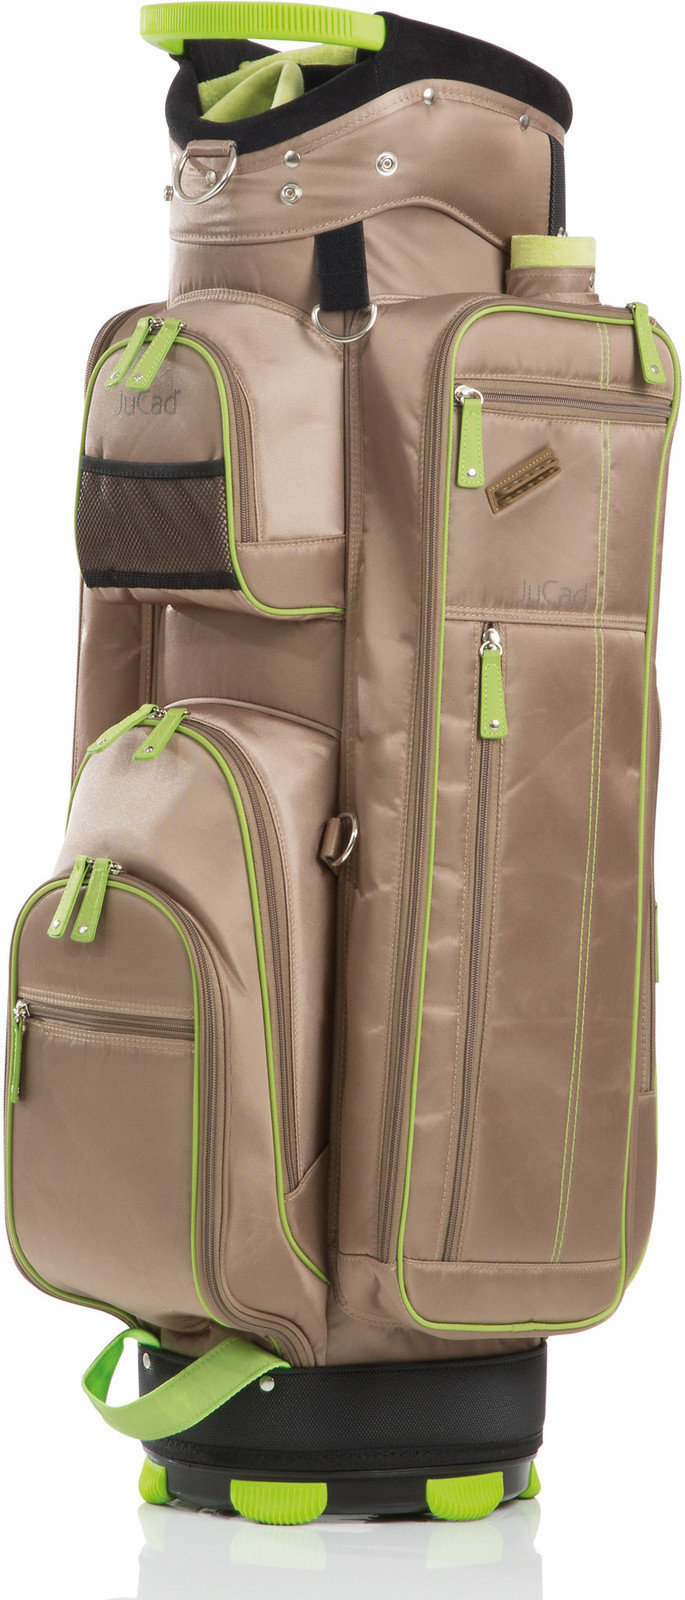 Golf torba Jucad Function Plus Beige/Green Golf torba